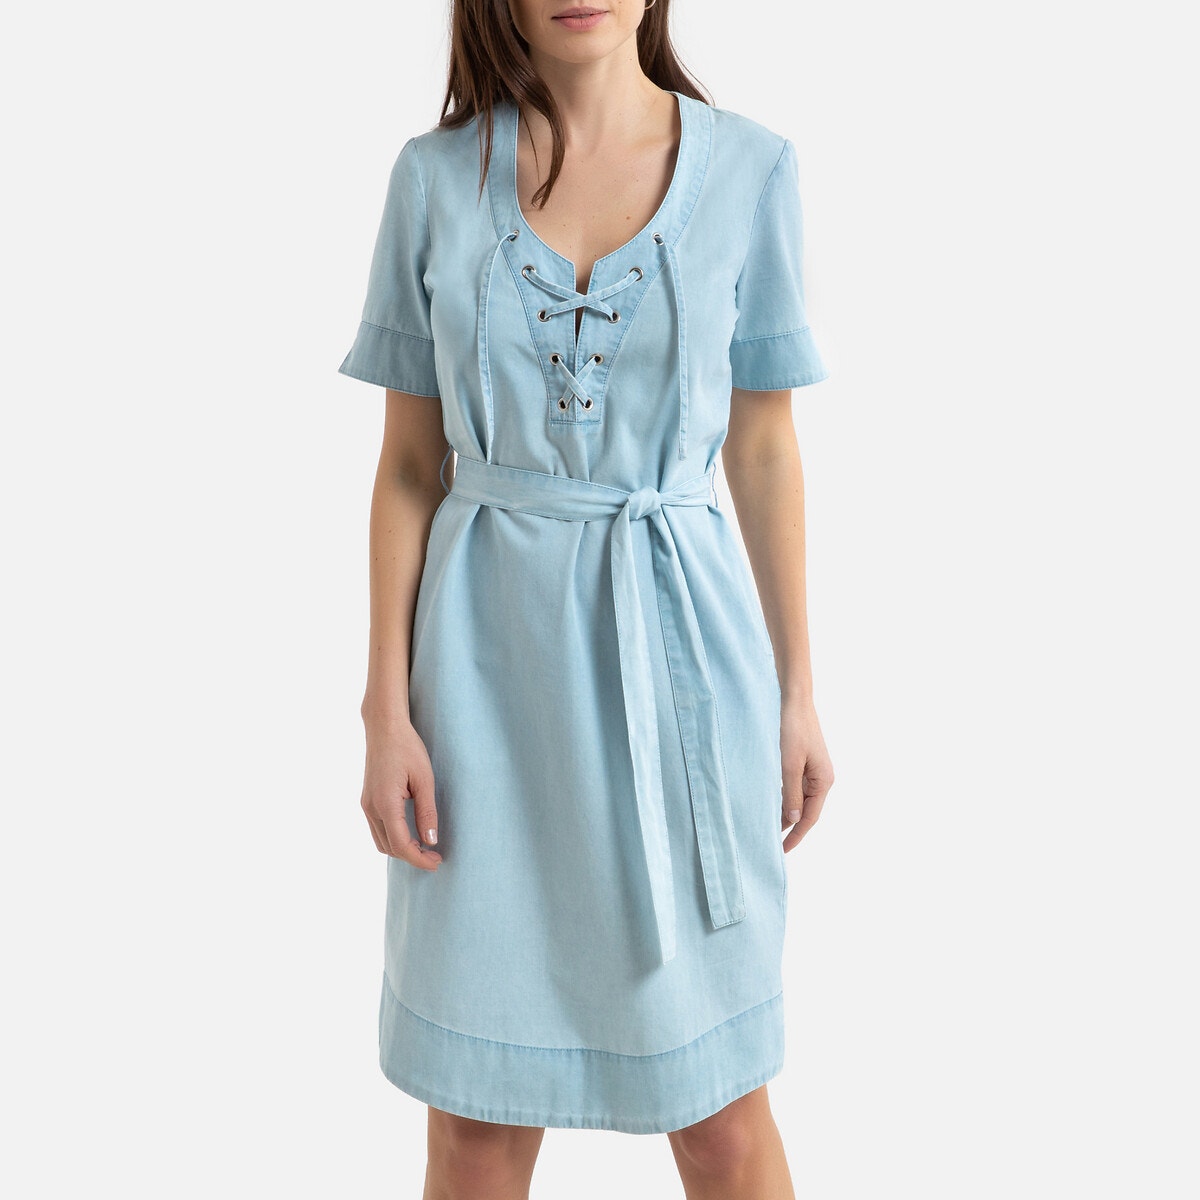 Κοντομάνικο ντένιμ φόρεμα σε ίσια γραμμή ΓΥΝΑΙΚΑ | Φορέματα | Κοντά μανίκια